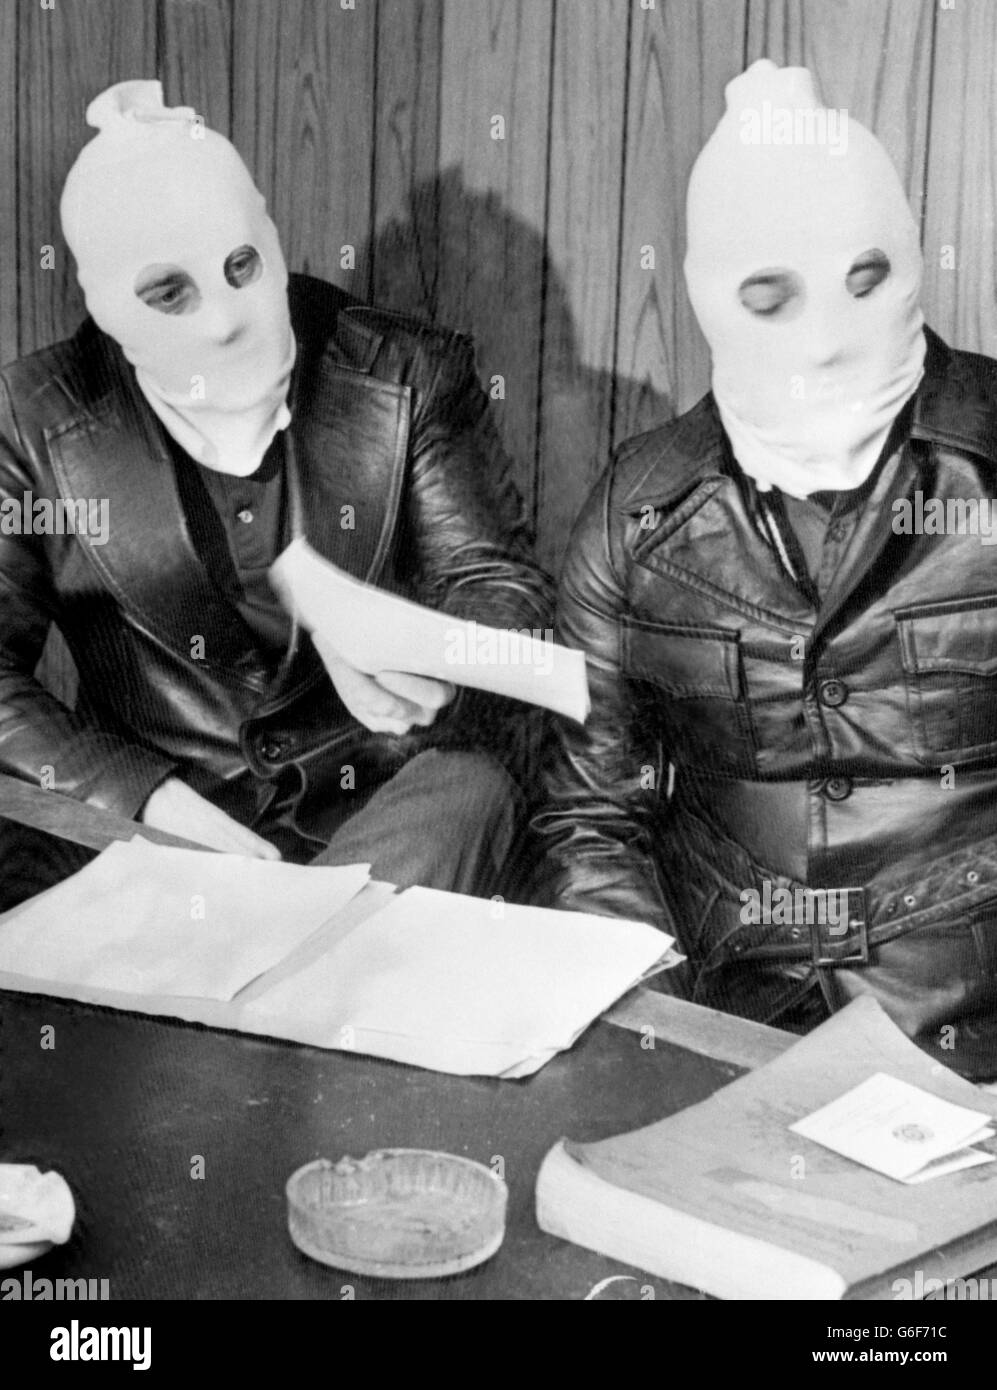 Hooded Leaders of the Ulster Volunteer Force in una conferenza stampa a Belfast. Due membri dell'Ulster Defense Association sono stati uccisi durante il fine settimana da uomini di armi mascherate. Foto Stock